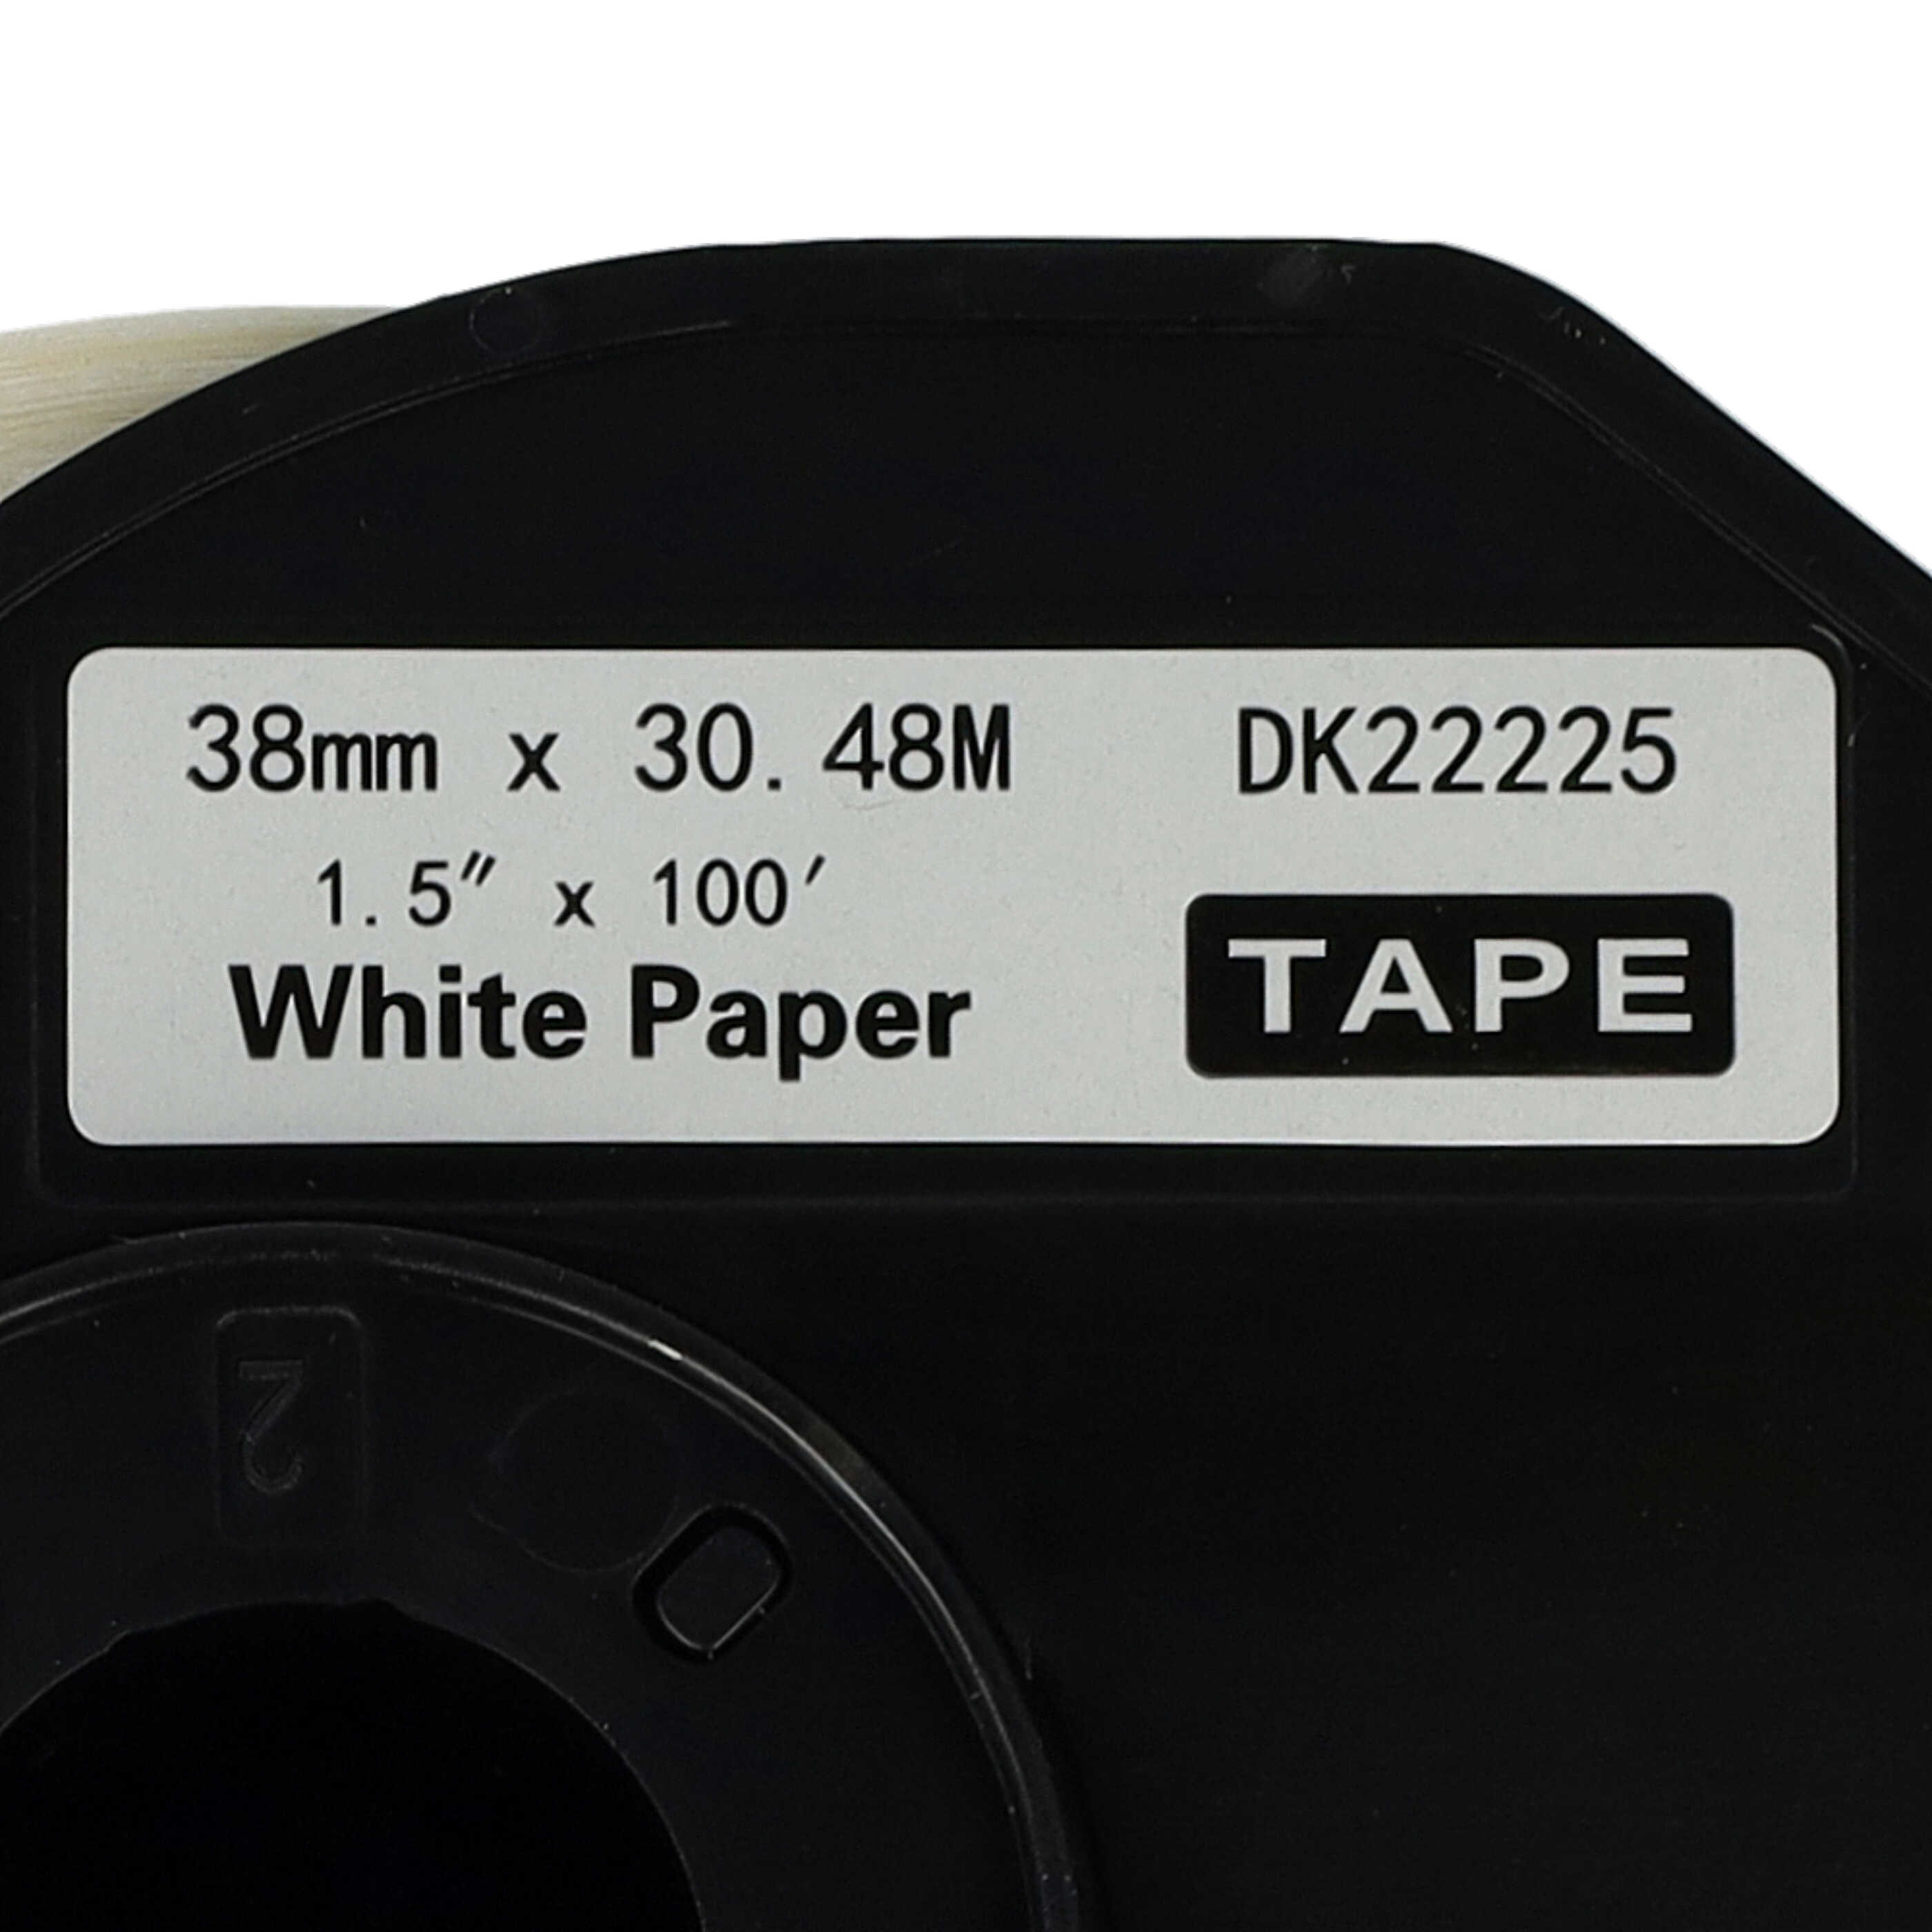 2x Etiketten als Ersatz für Brother DK-22225 für Etikettendrucker - 38mm x 30,48m + Halter